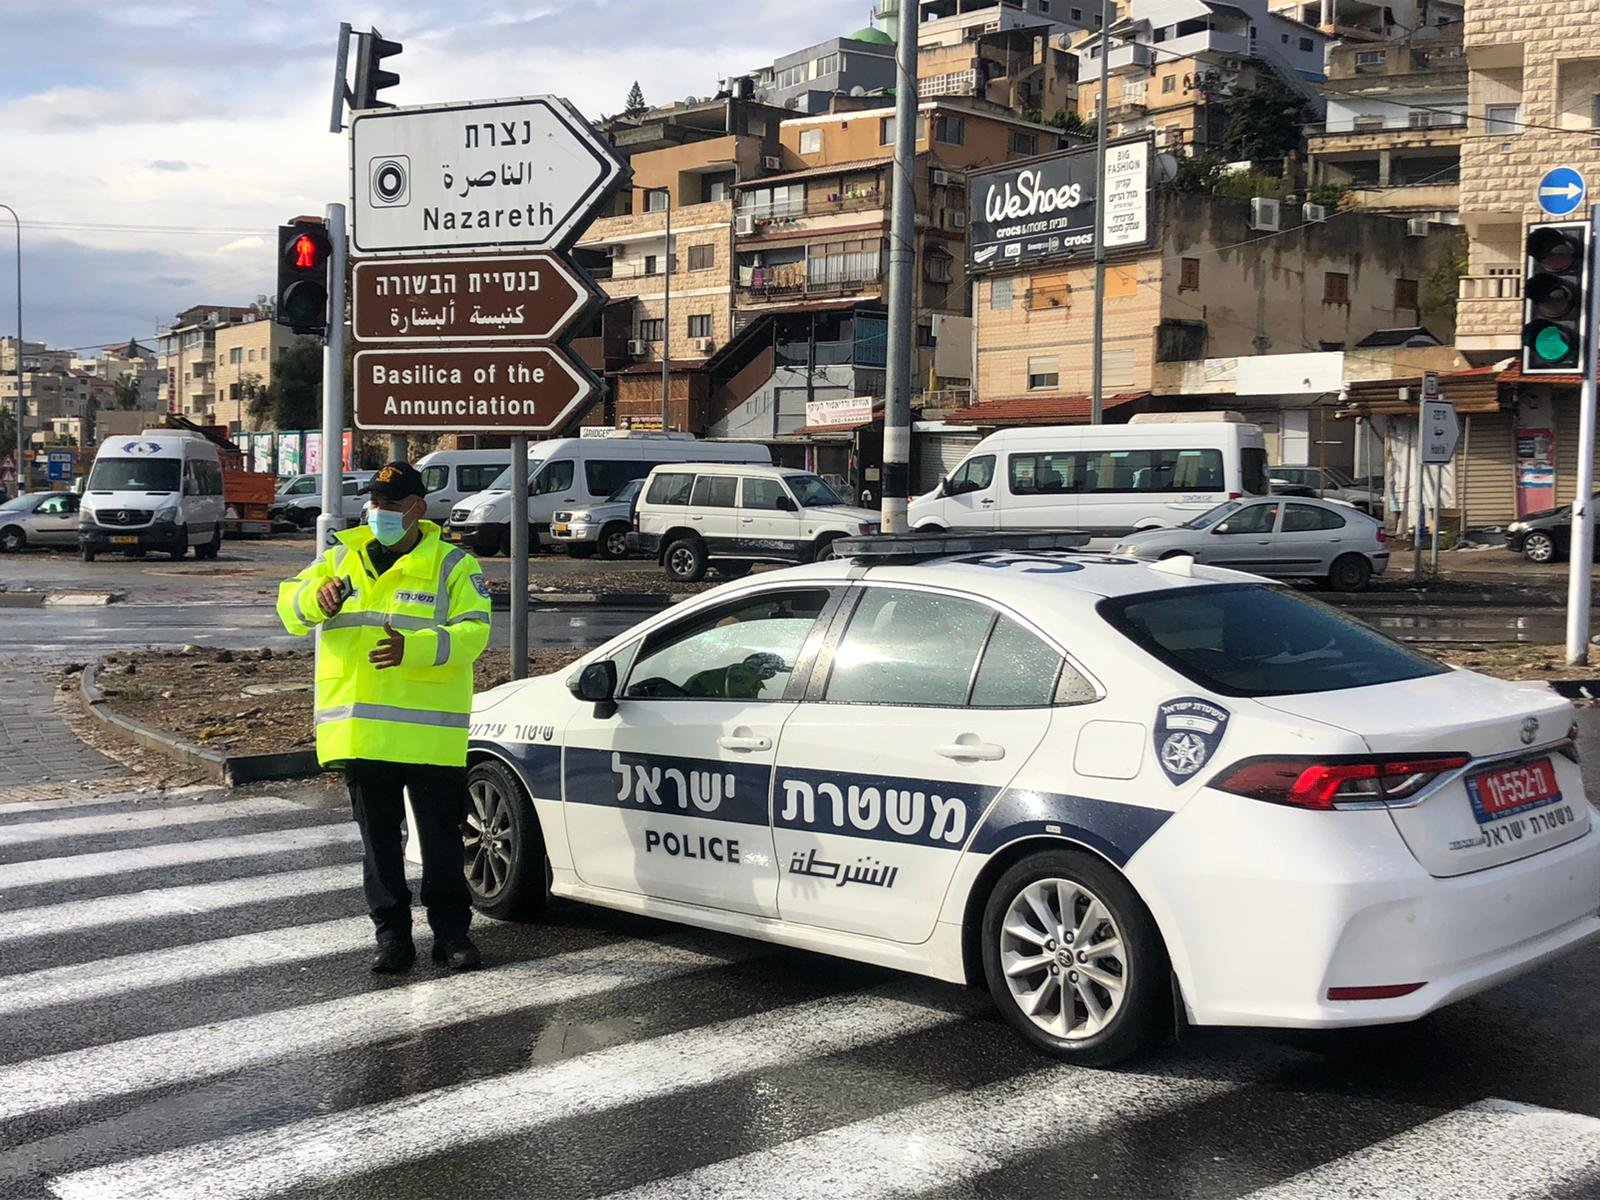 تشديدات شرطية وتقييدات جادة بعد اعلان الناصرة حمراء واغلاقها-5